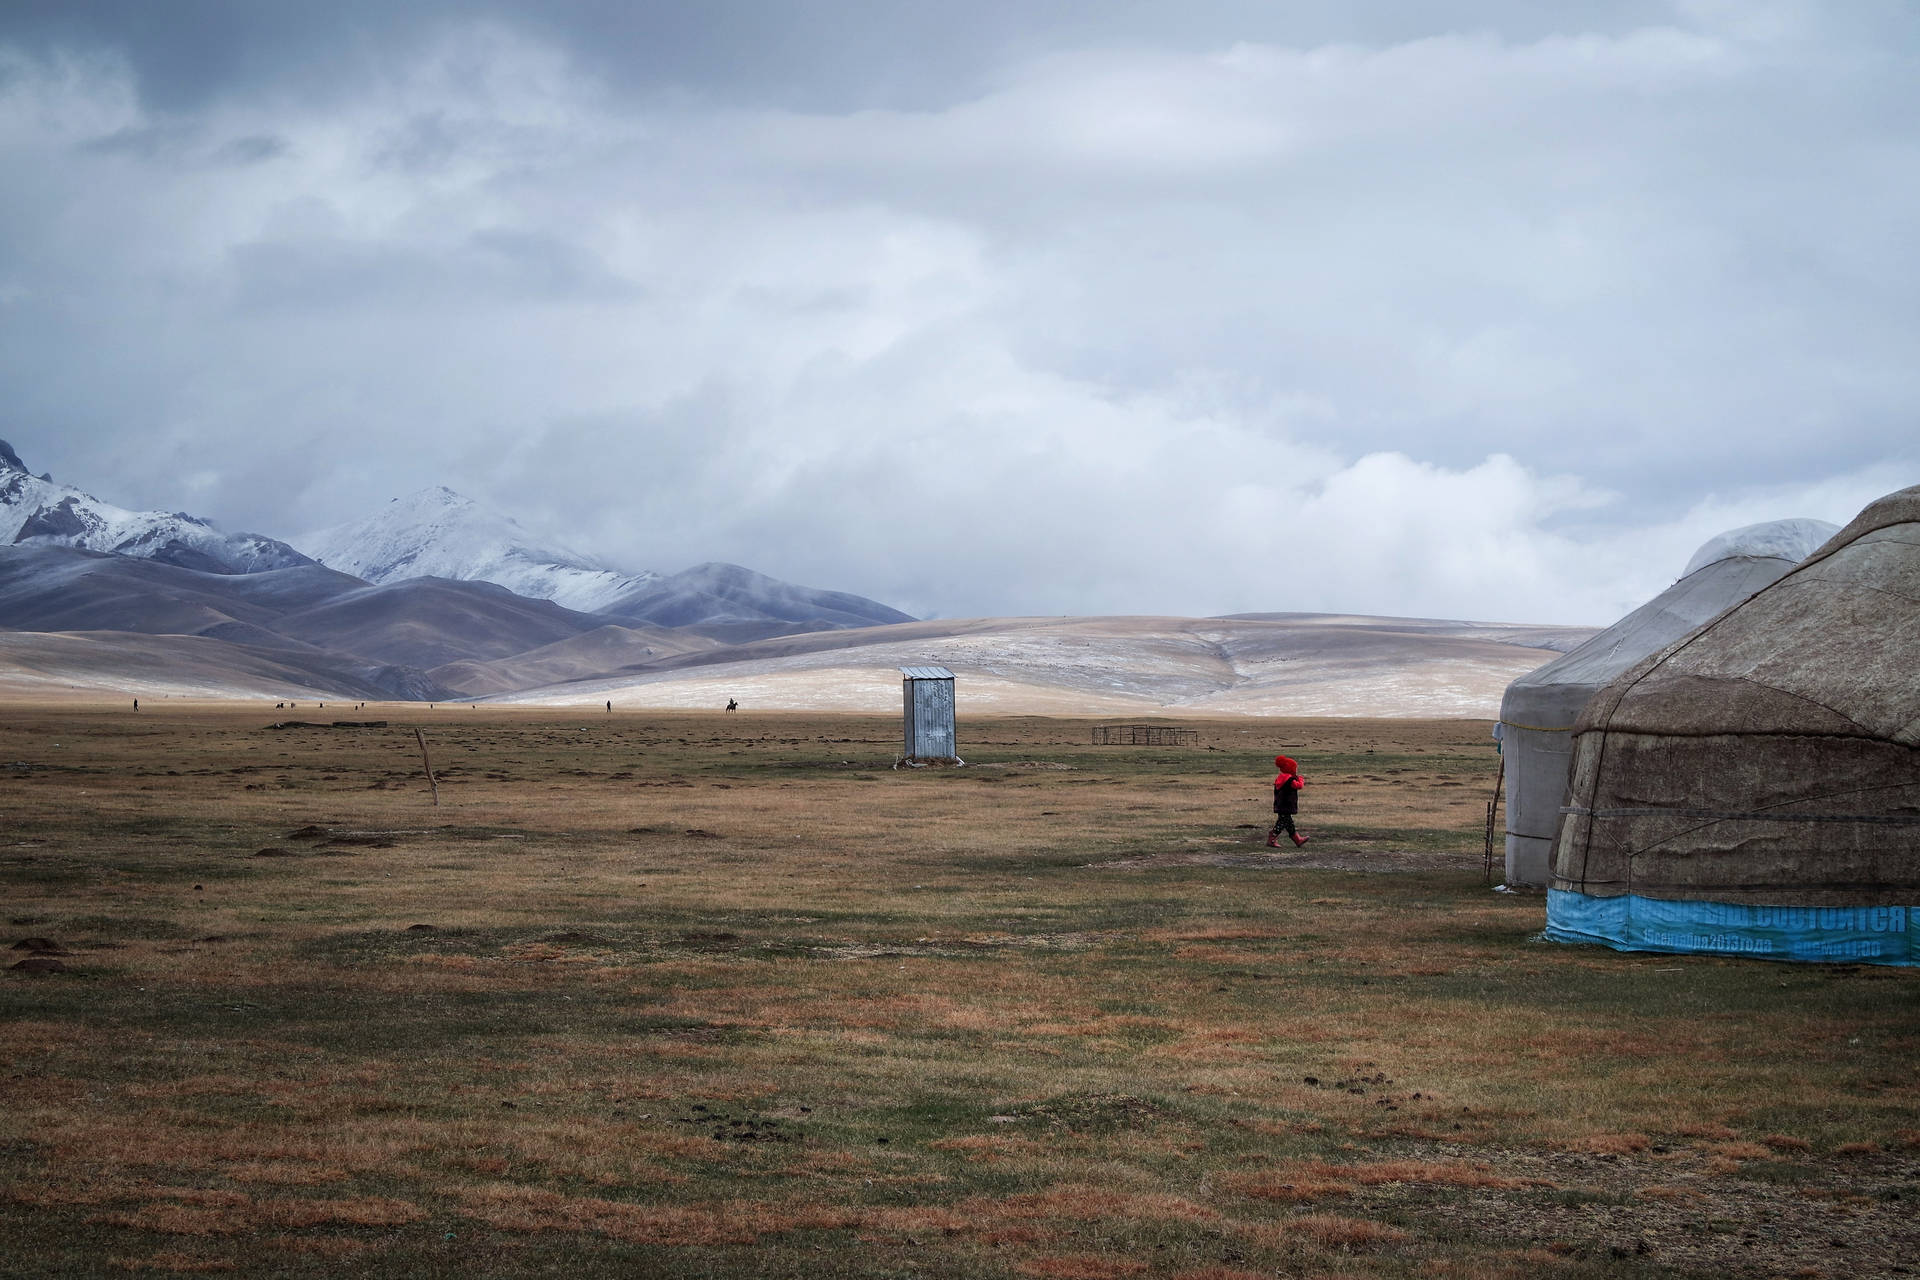 Kyrgyzstan Tent Life